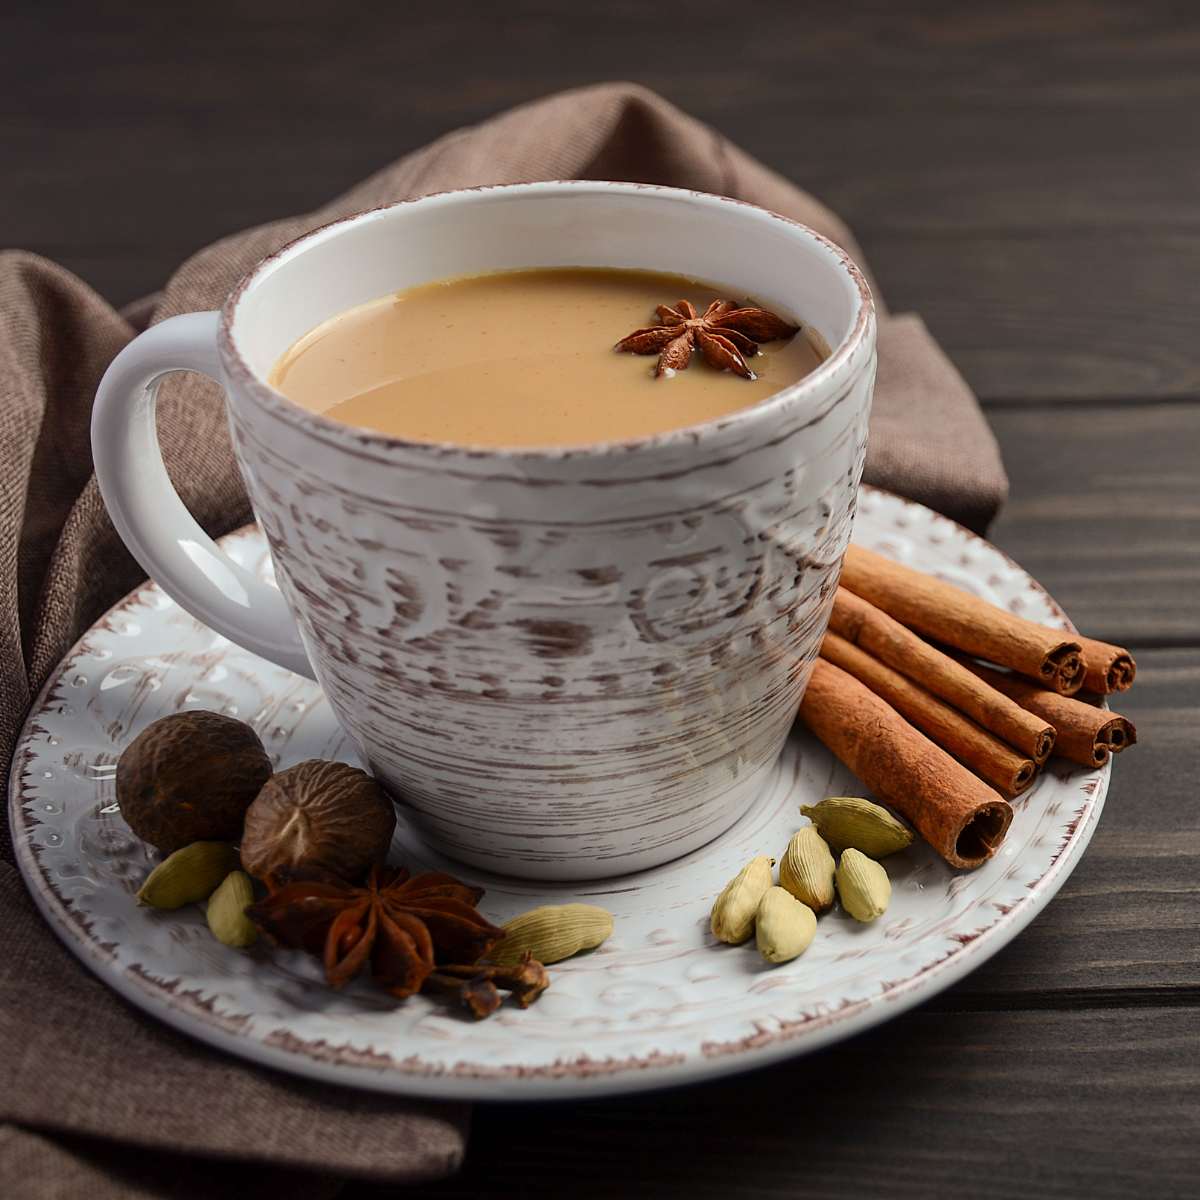 Spiced tea with Cinnamon, Cardamom, Star Anise, and Nutmeg in a saucer on table